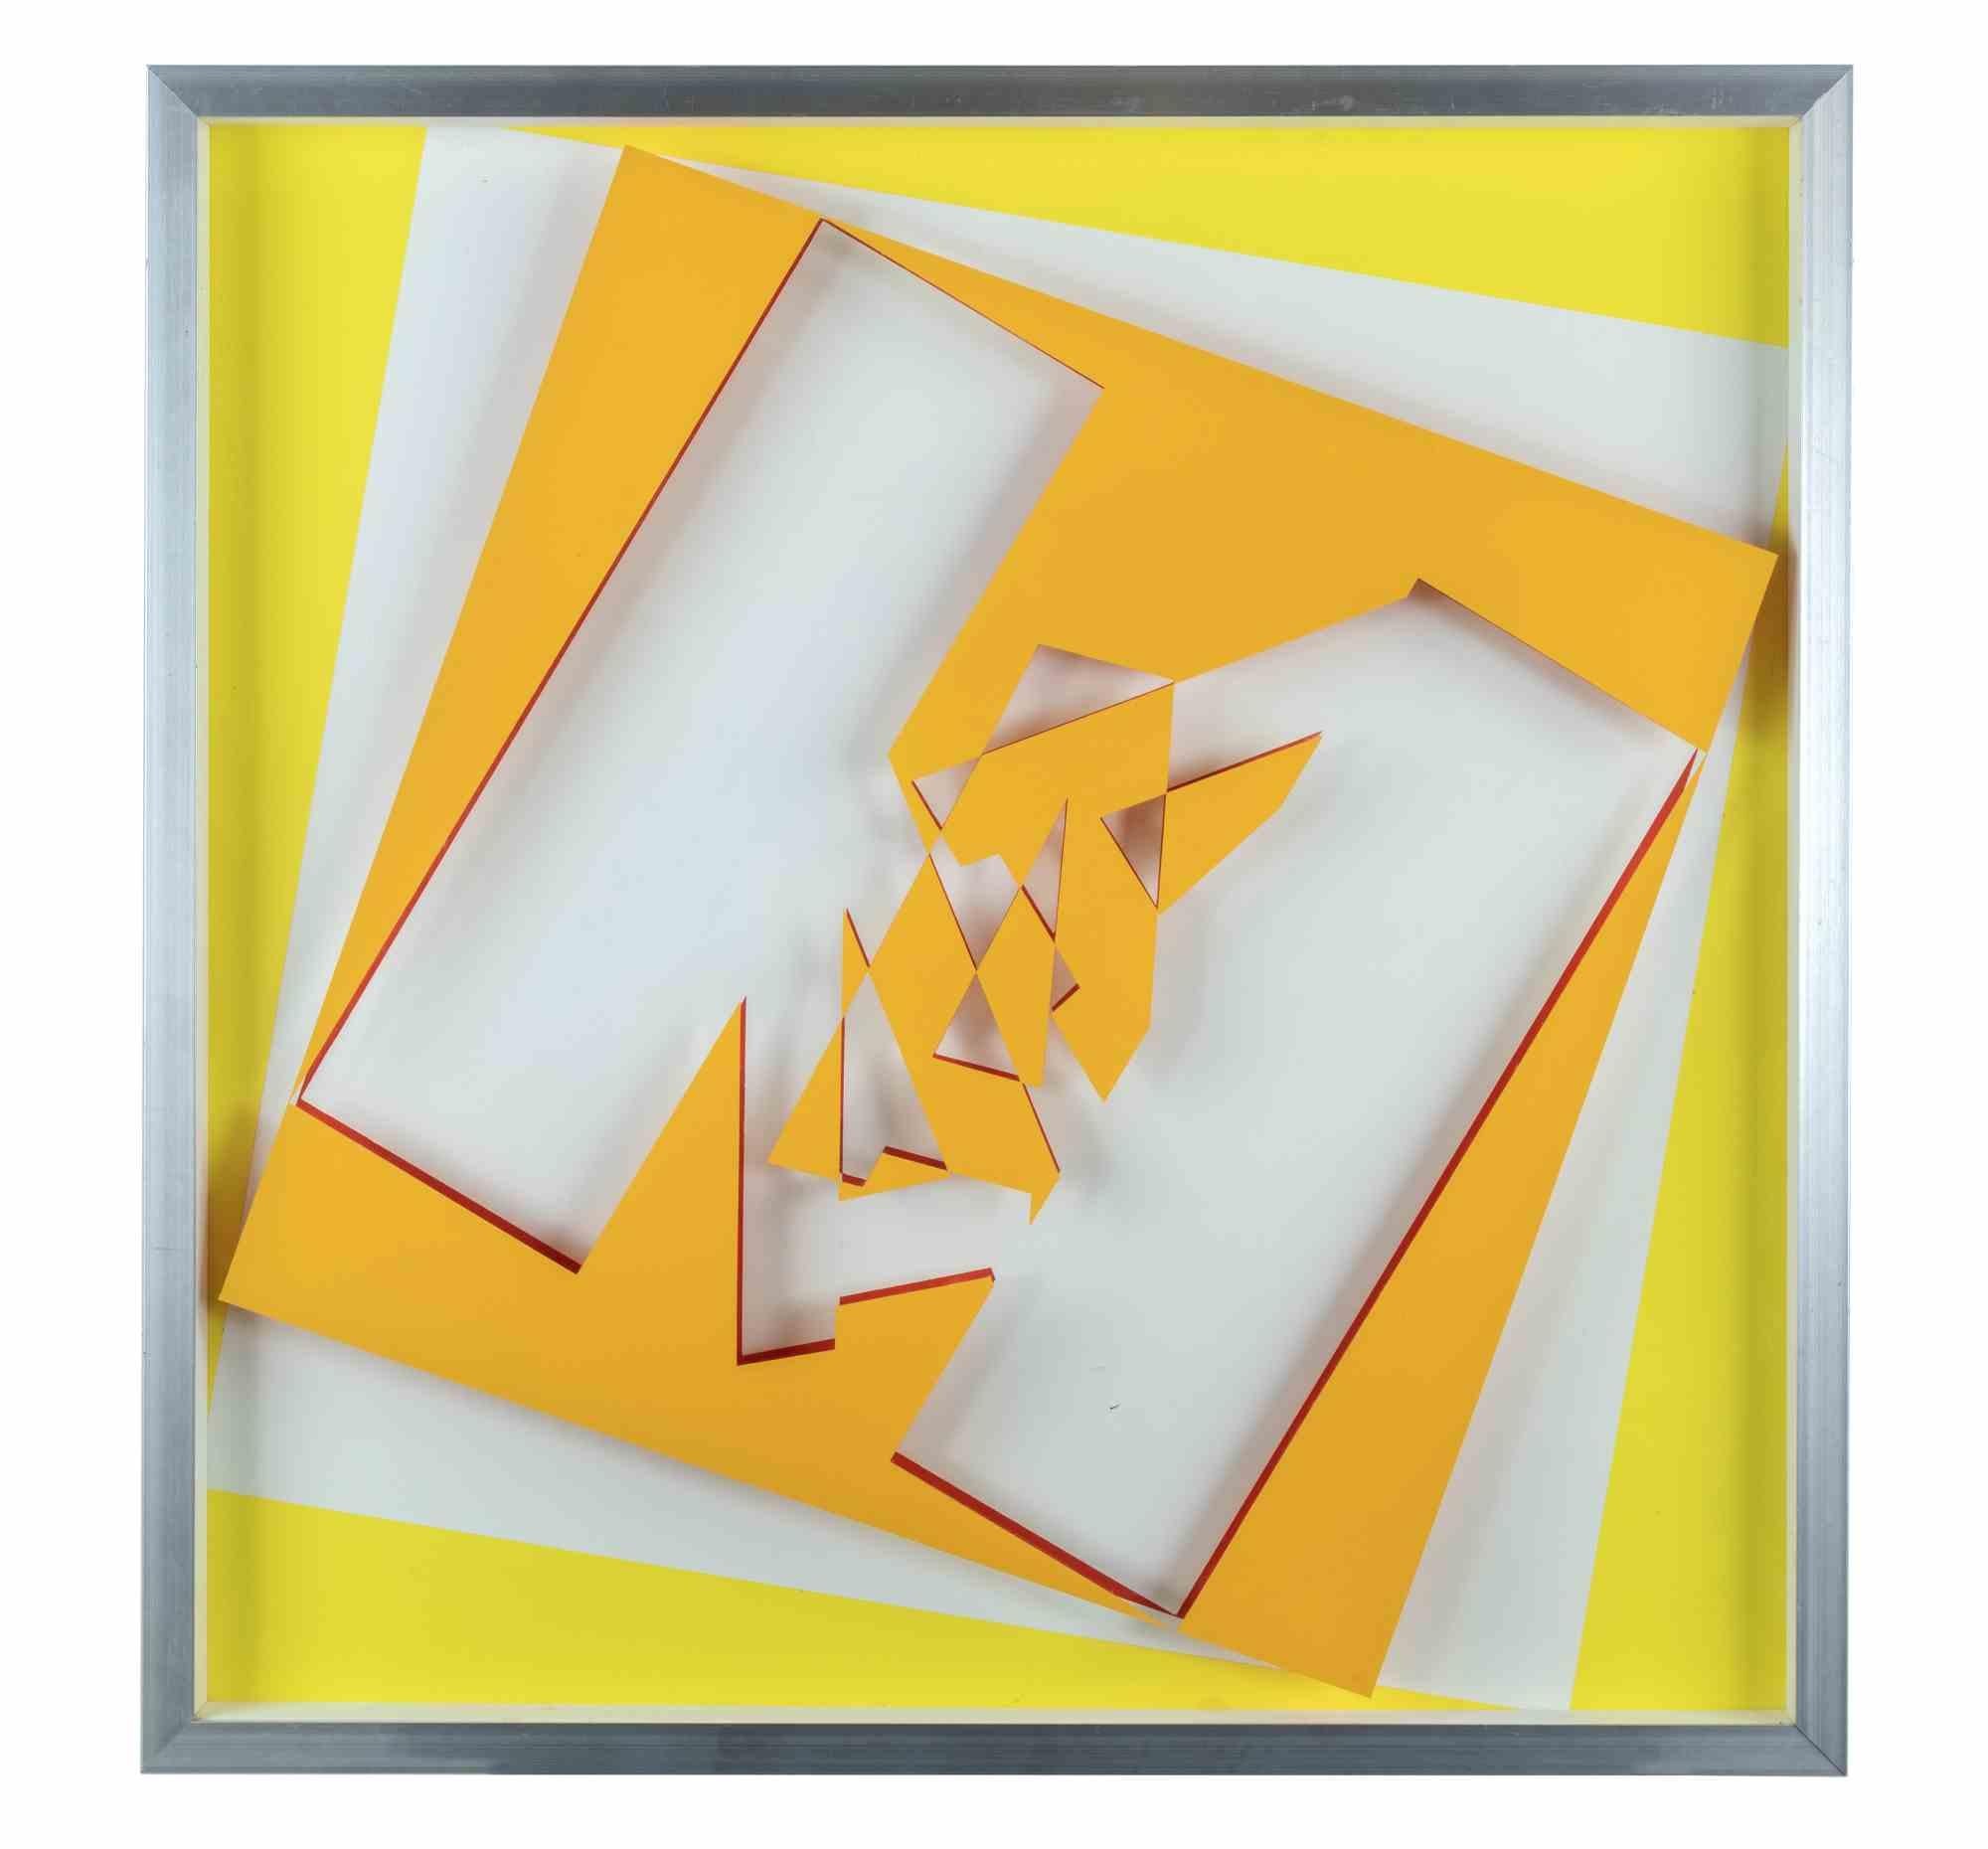 Blanc, rouge, jaune, orange 7522 est une œuvre d'art réalisée par l'artiste italien Renato Spagnoli (Livourne, 1928-Livourne, 2019) en 1974.

Médias mixtes

Signé à la main, titré et daté au dos.